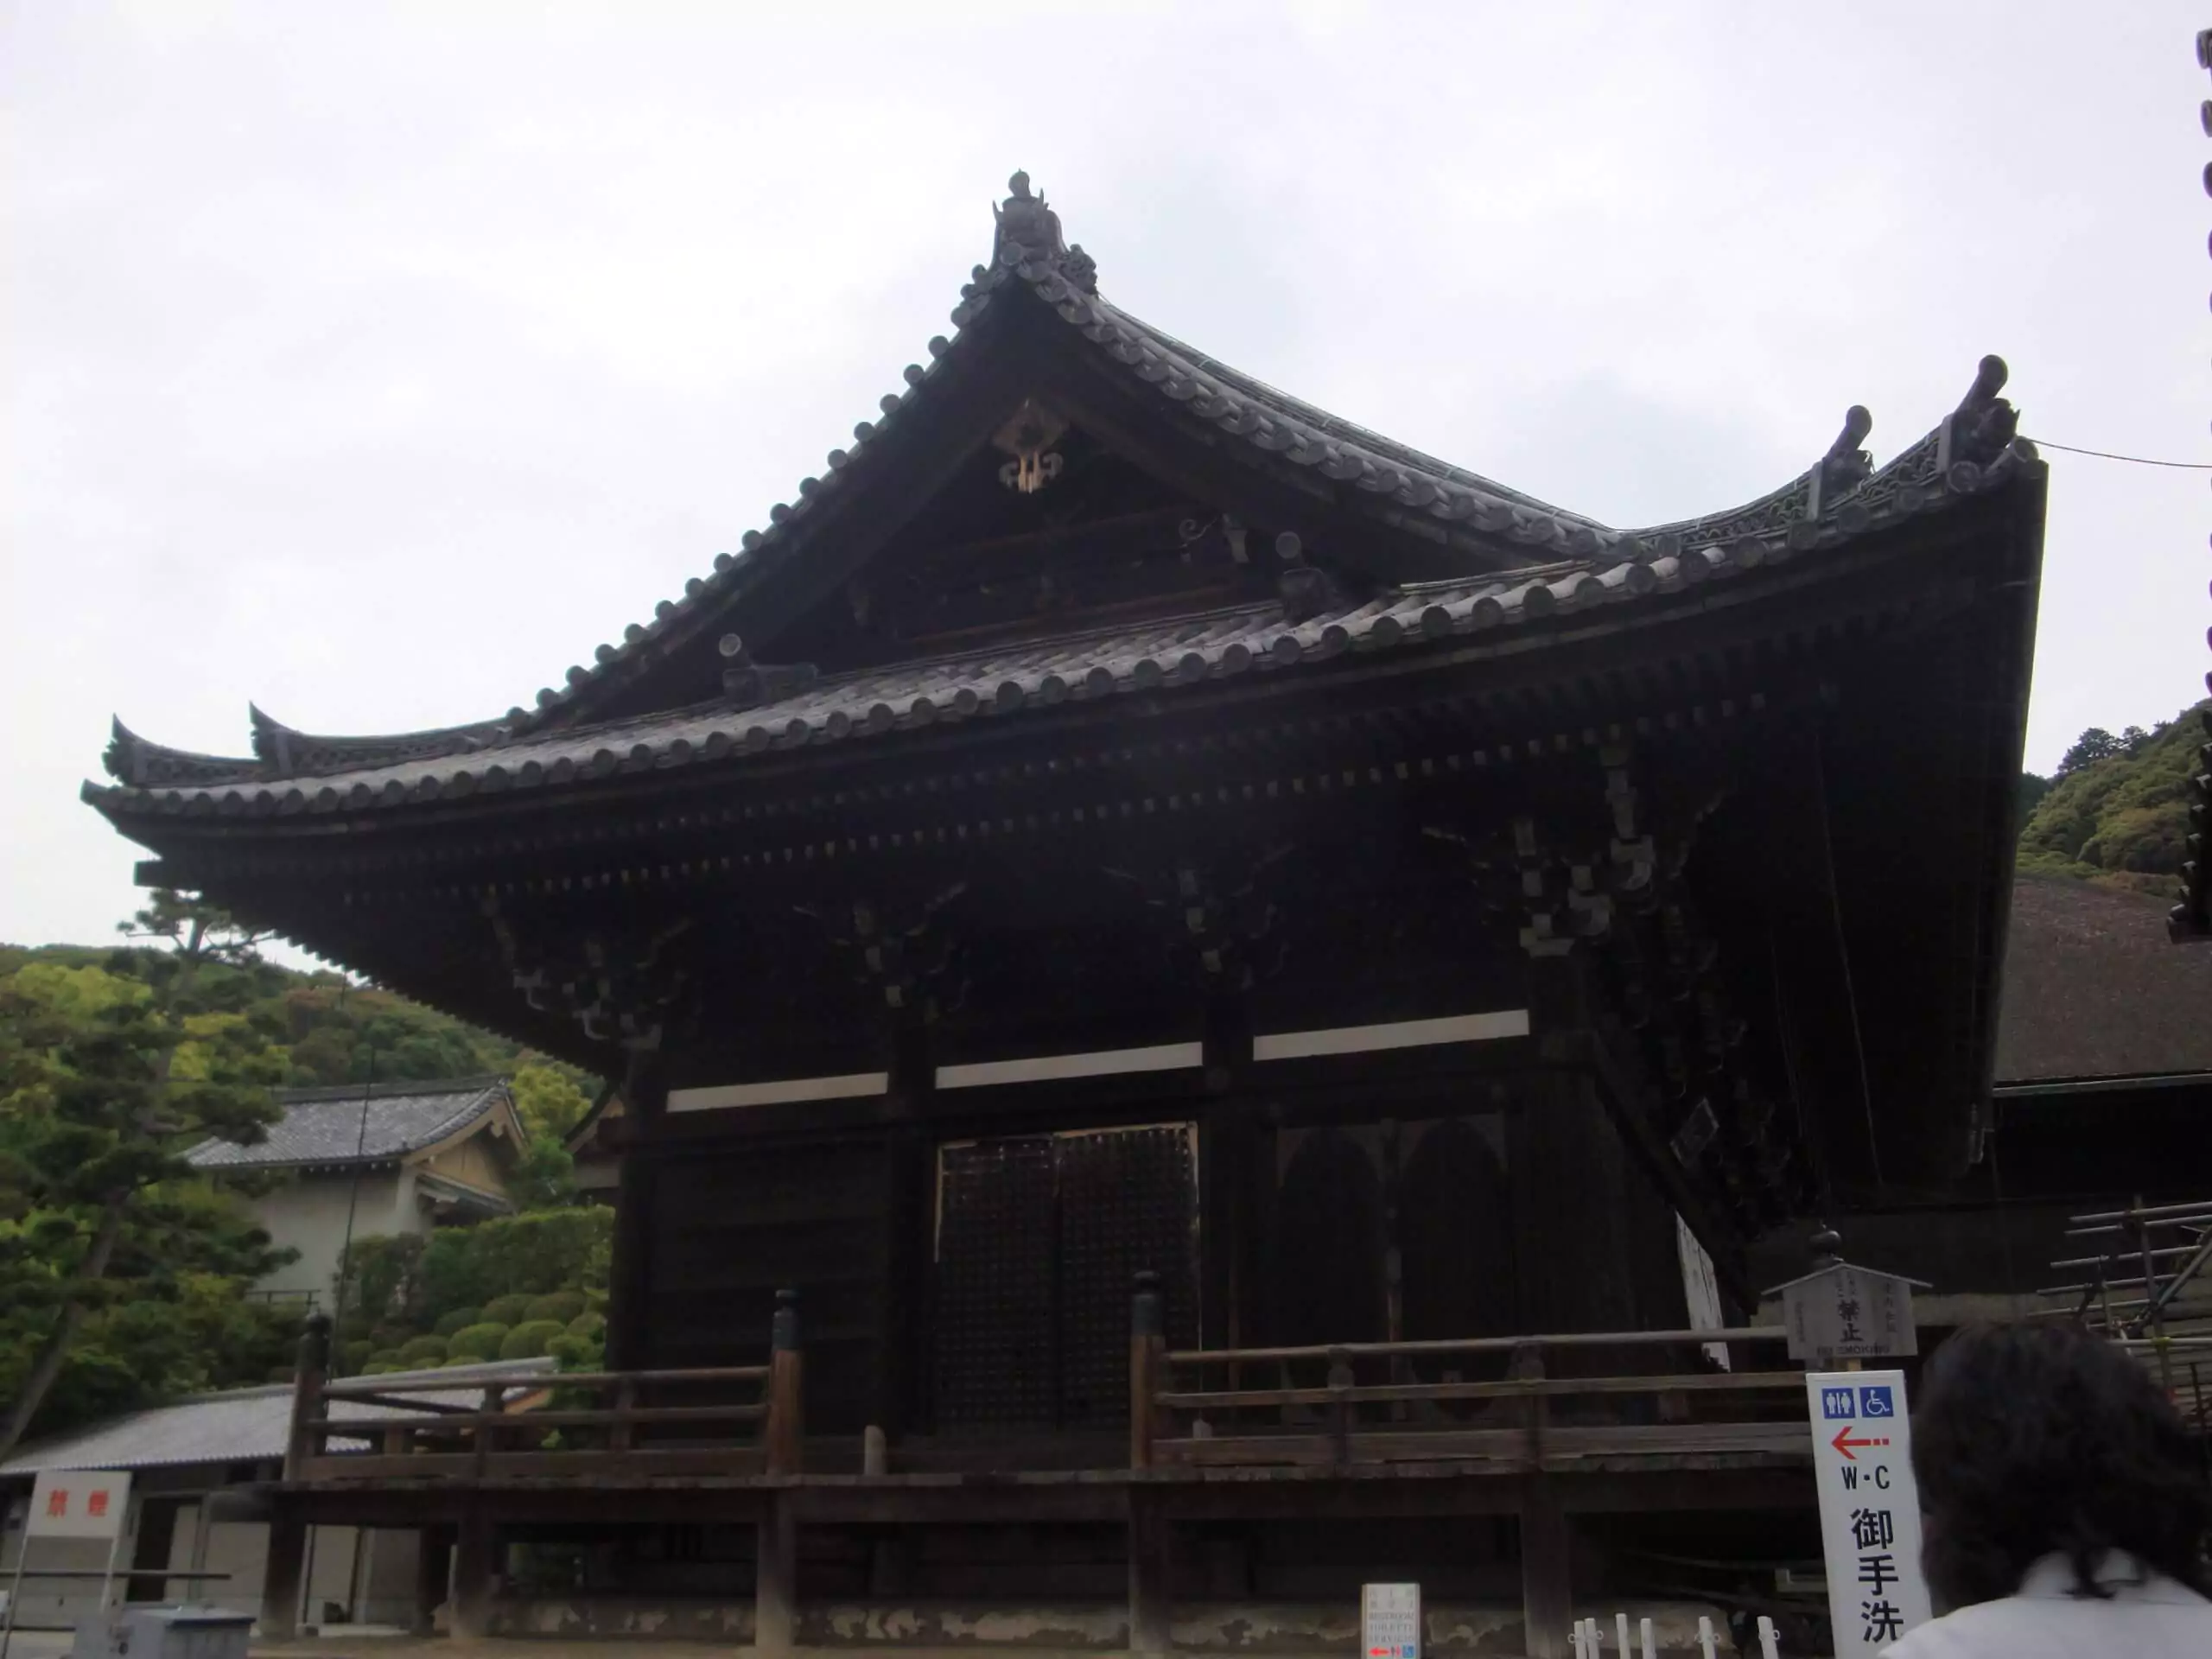 Kiyomizo Temple